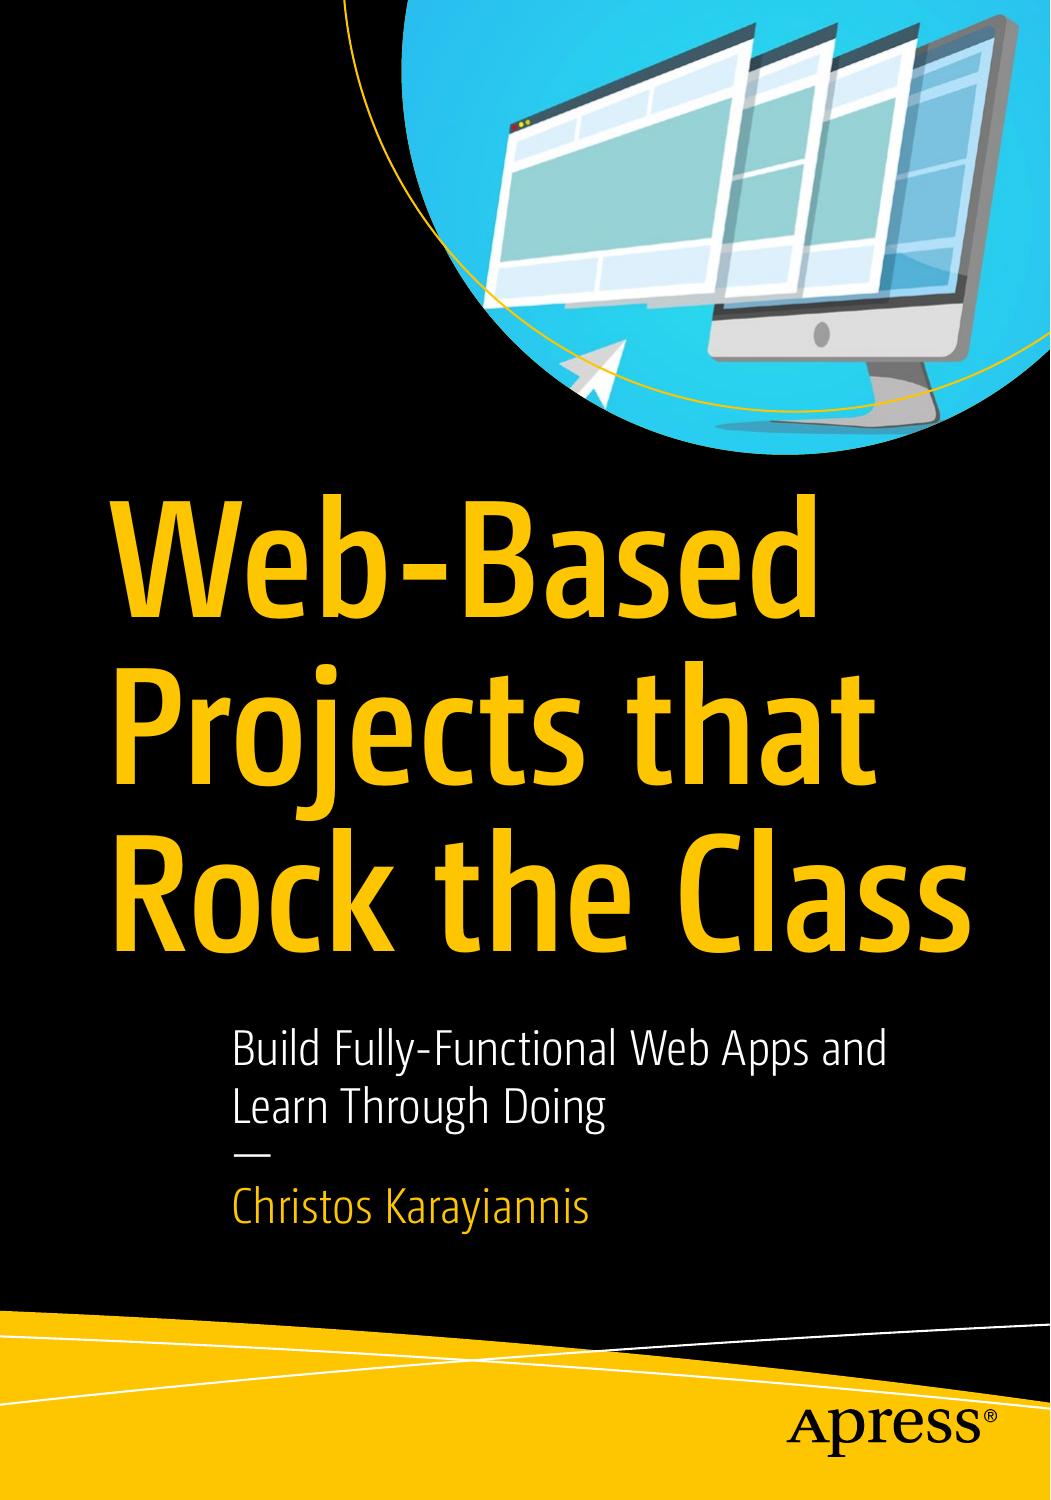 Apress Web-Based Projects that.Rock the Class - Wei Zhi.jpg